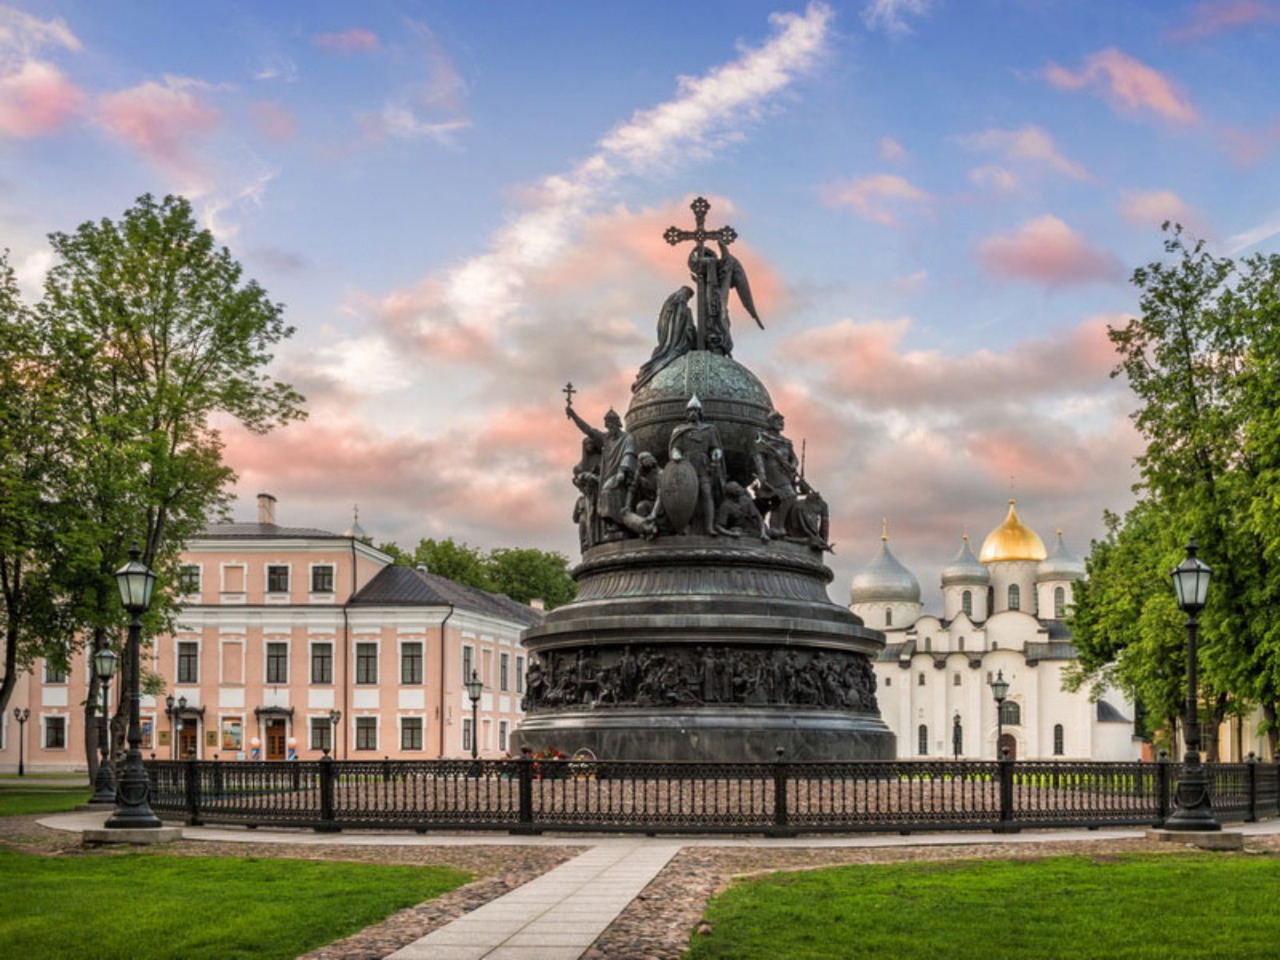 Великий Новгород — древняя столица Севера Руси | Цена 3800₽, отзывы, описание экскурсии